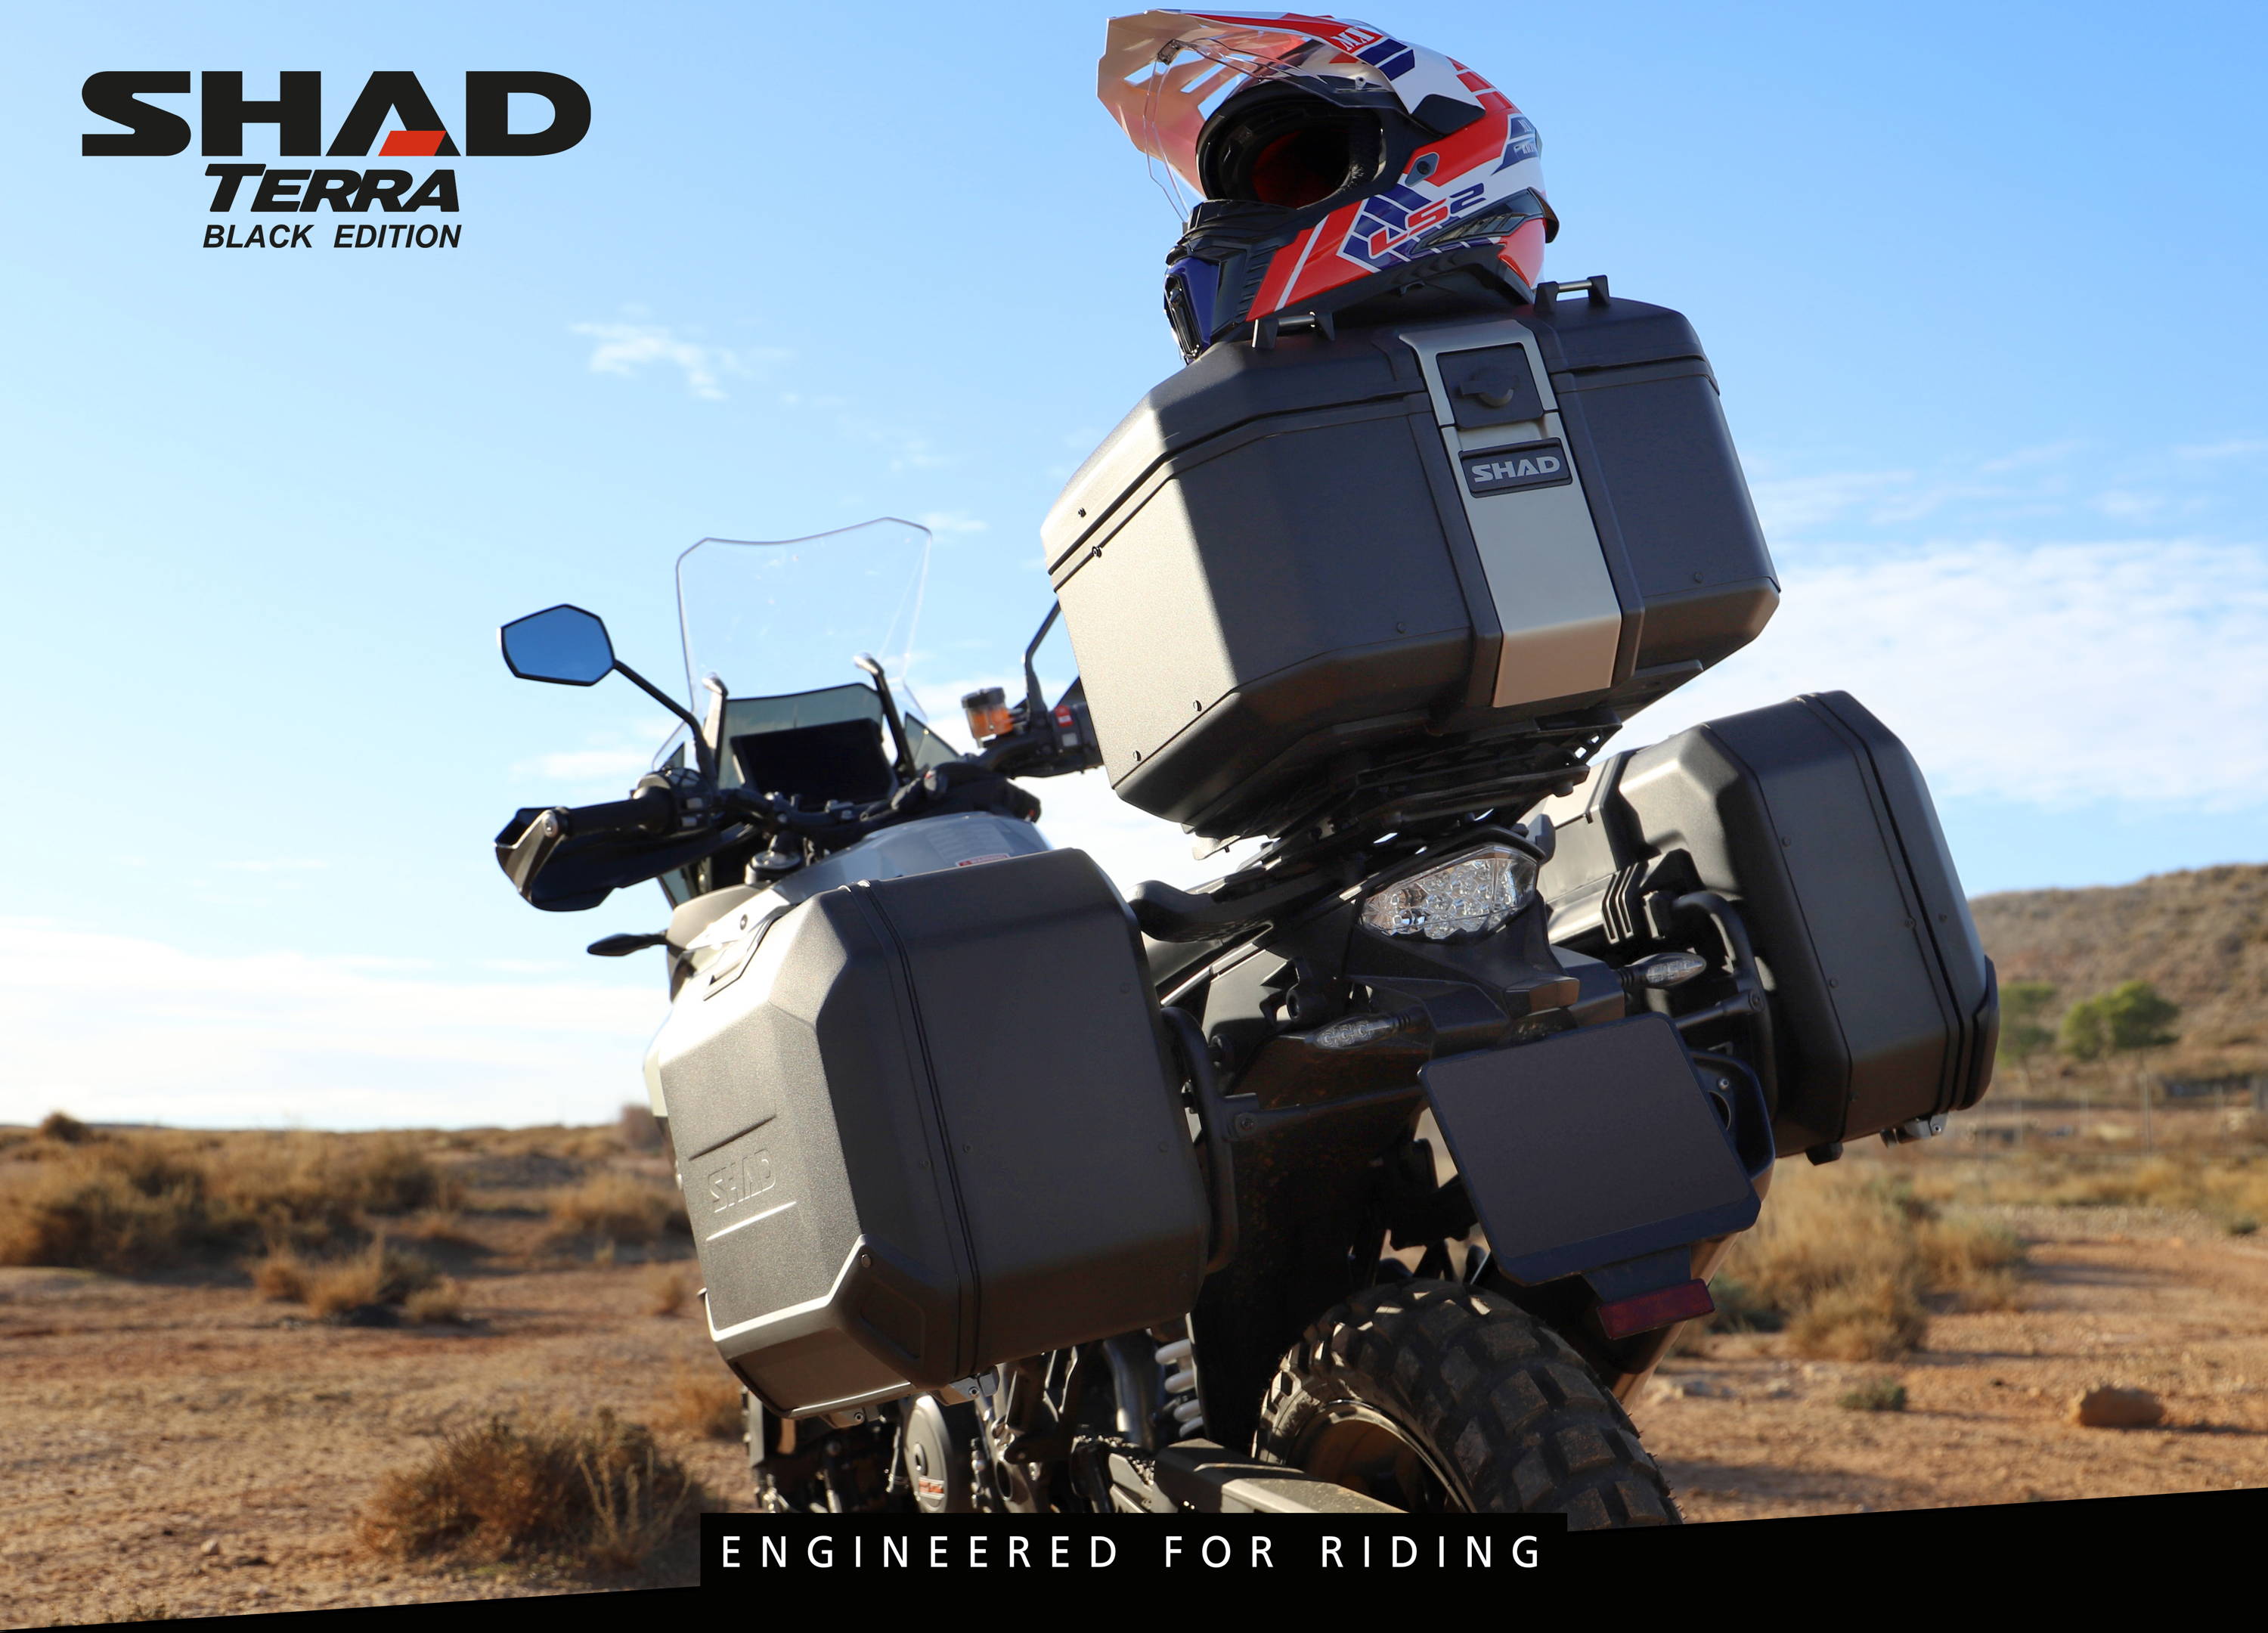 shad-top-case-moto-tr48-terra-48-litres-aluminium-ref-d0tr48100